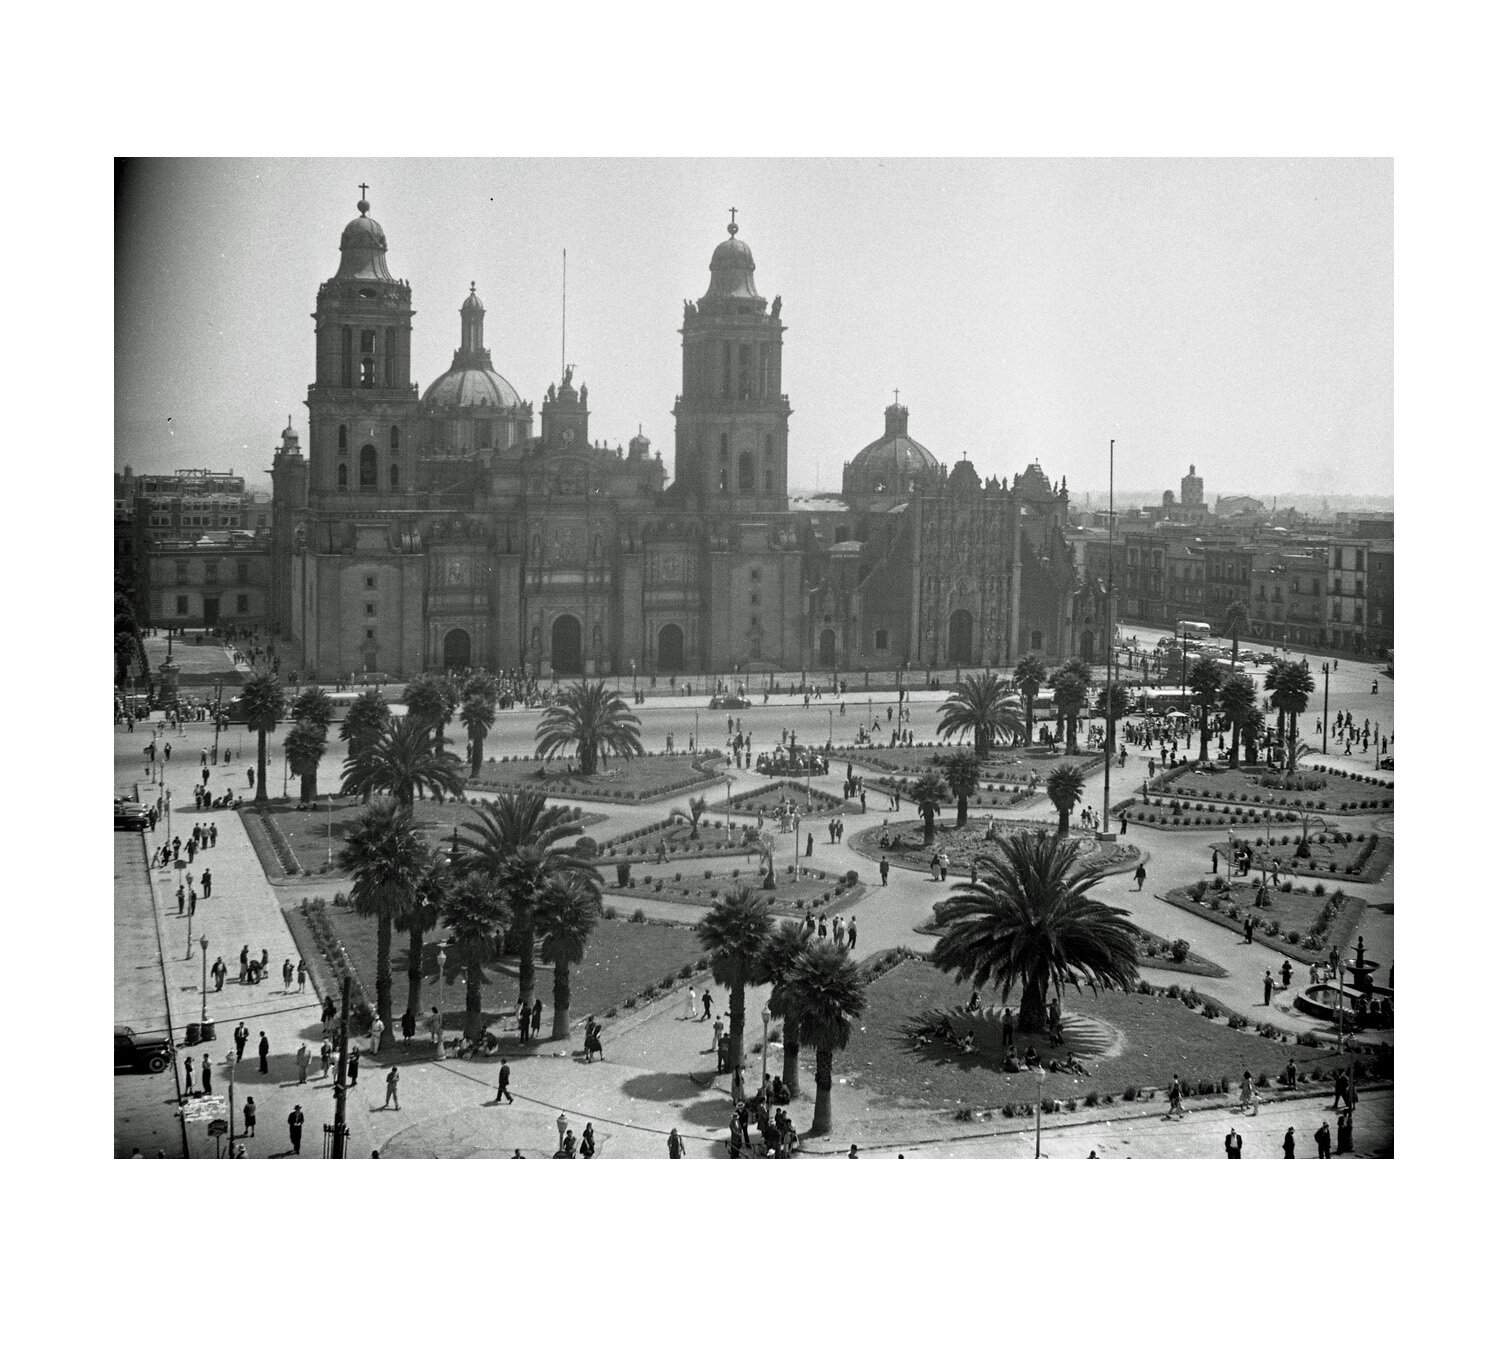  Plaza Zocalo in Mexico City c. 1940s    